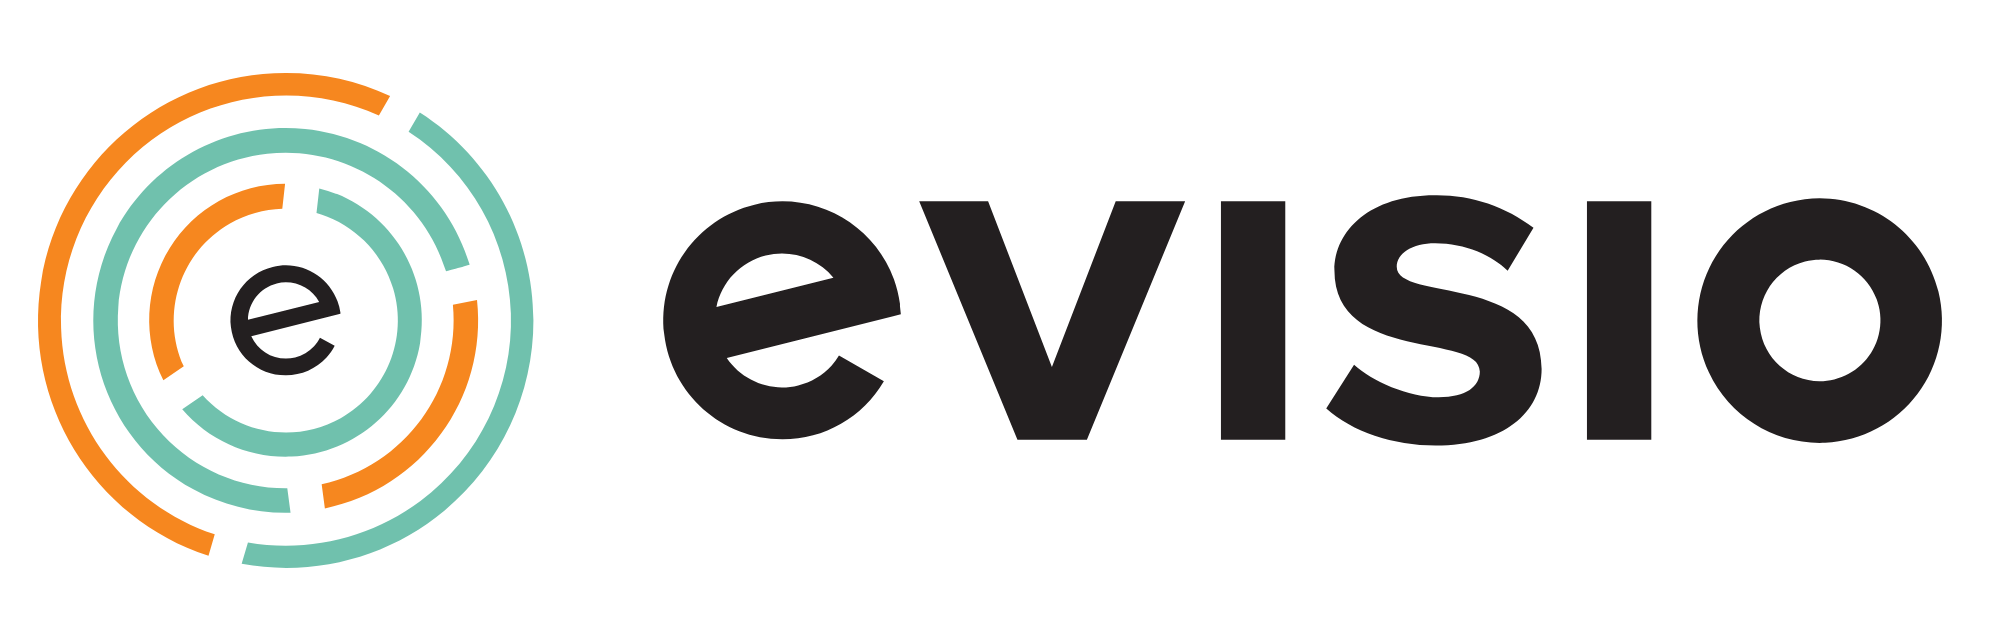 evisio-logo